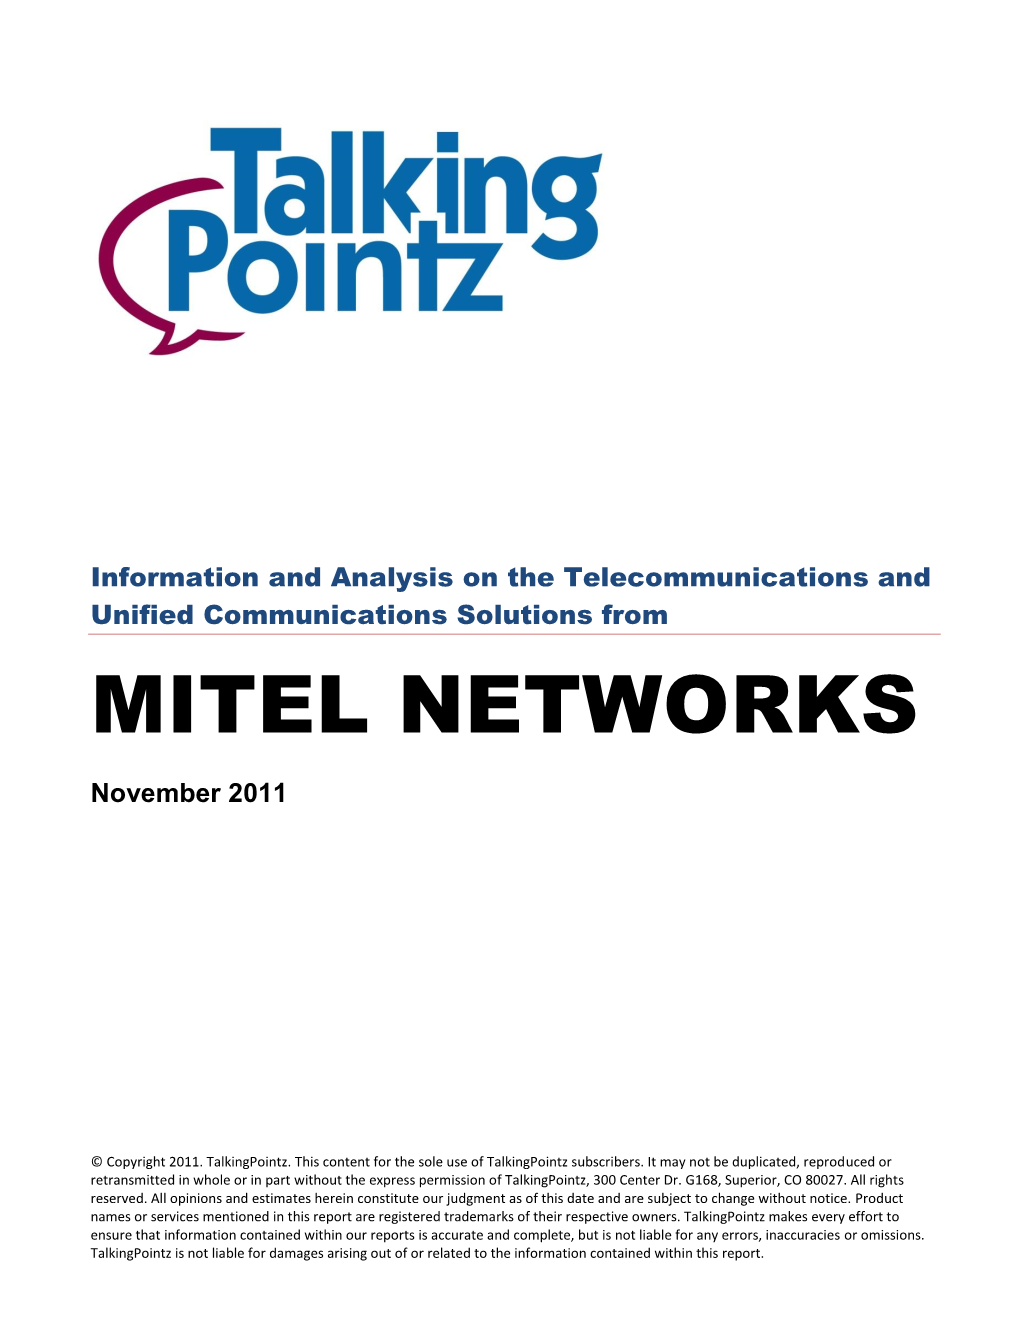 MITEL NETWORKS November 2011